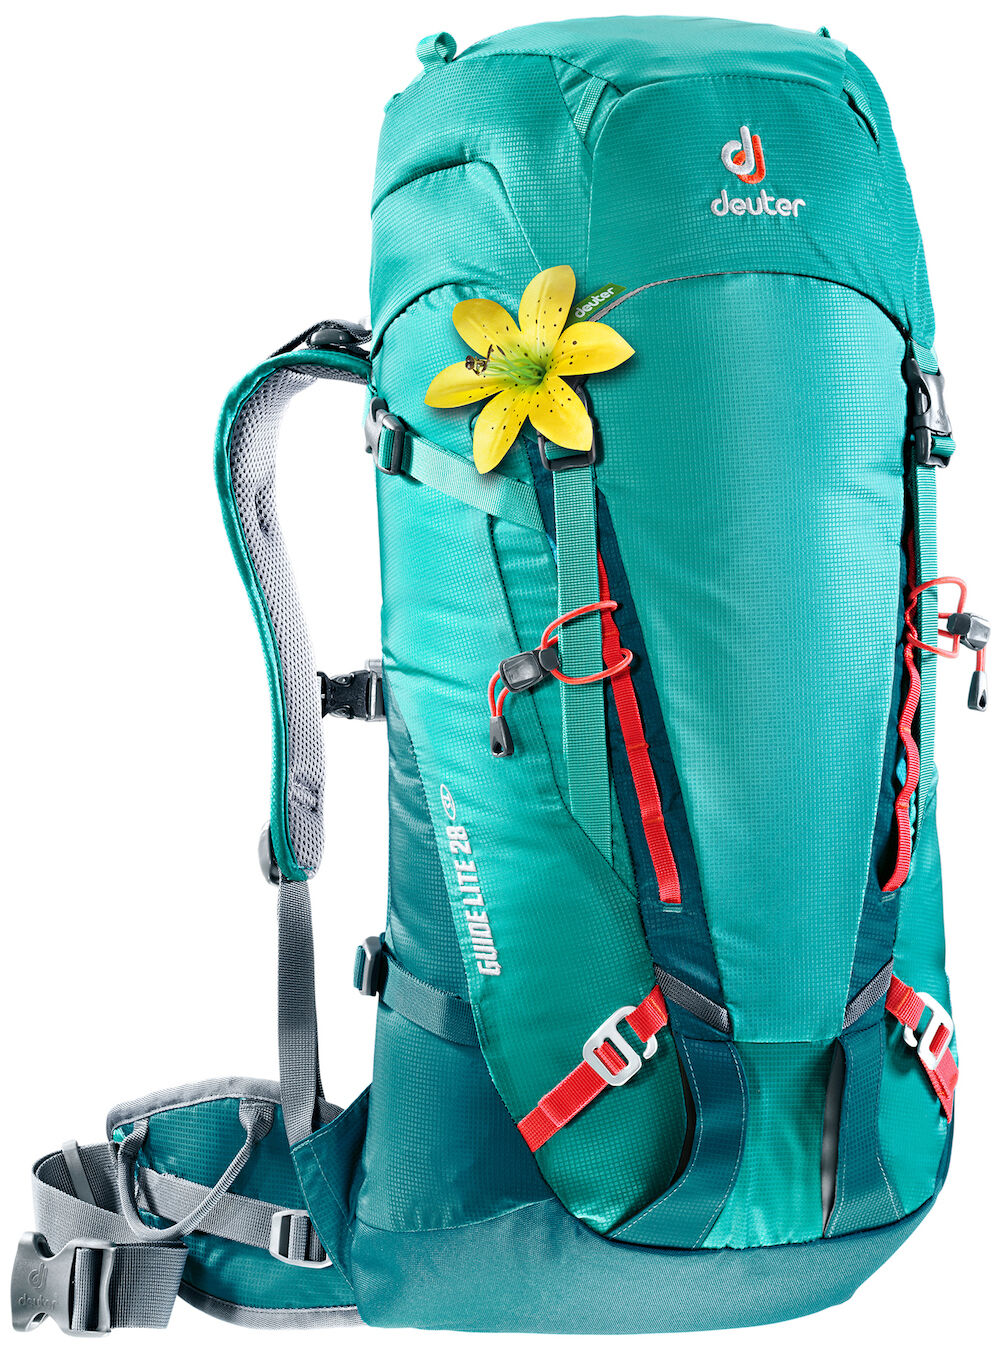 Deuter - Guide Lite 28 SL - Backpack - Women's